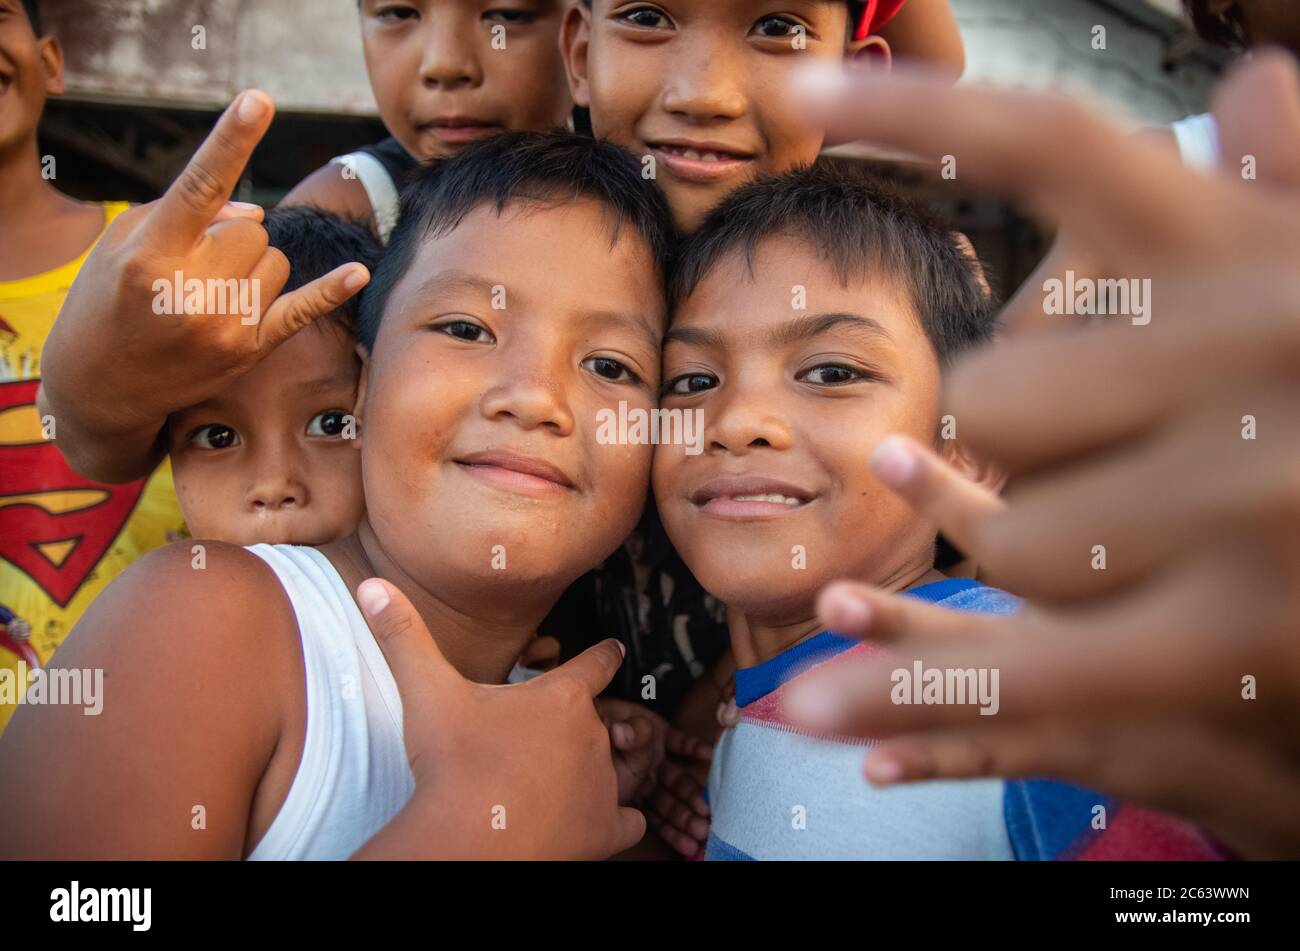 Eine Gruppe von glücklichen jungen philippinischen Jungen posiert für Bild, Catbalogan City, Samar Island, Philippinen. Stockfoto